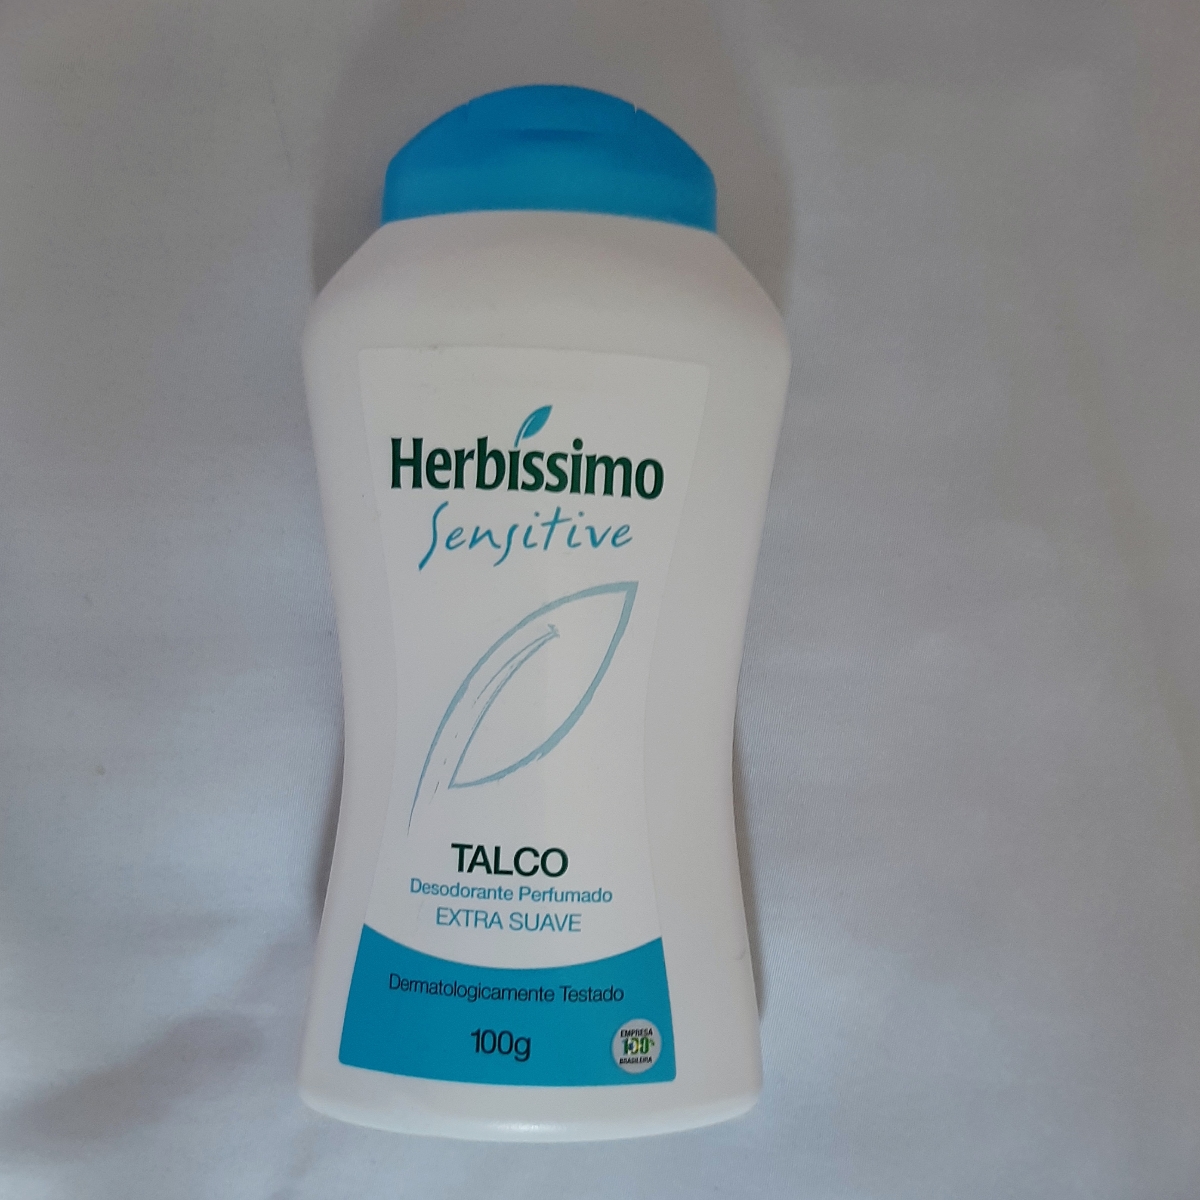 Herbissimo TALCO DESODORANTE HERBISSIMO SENSITIVE 100G Reviews | abillion